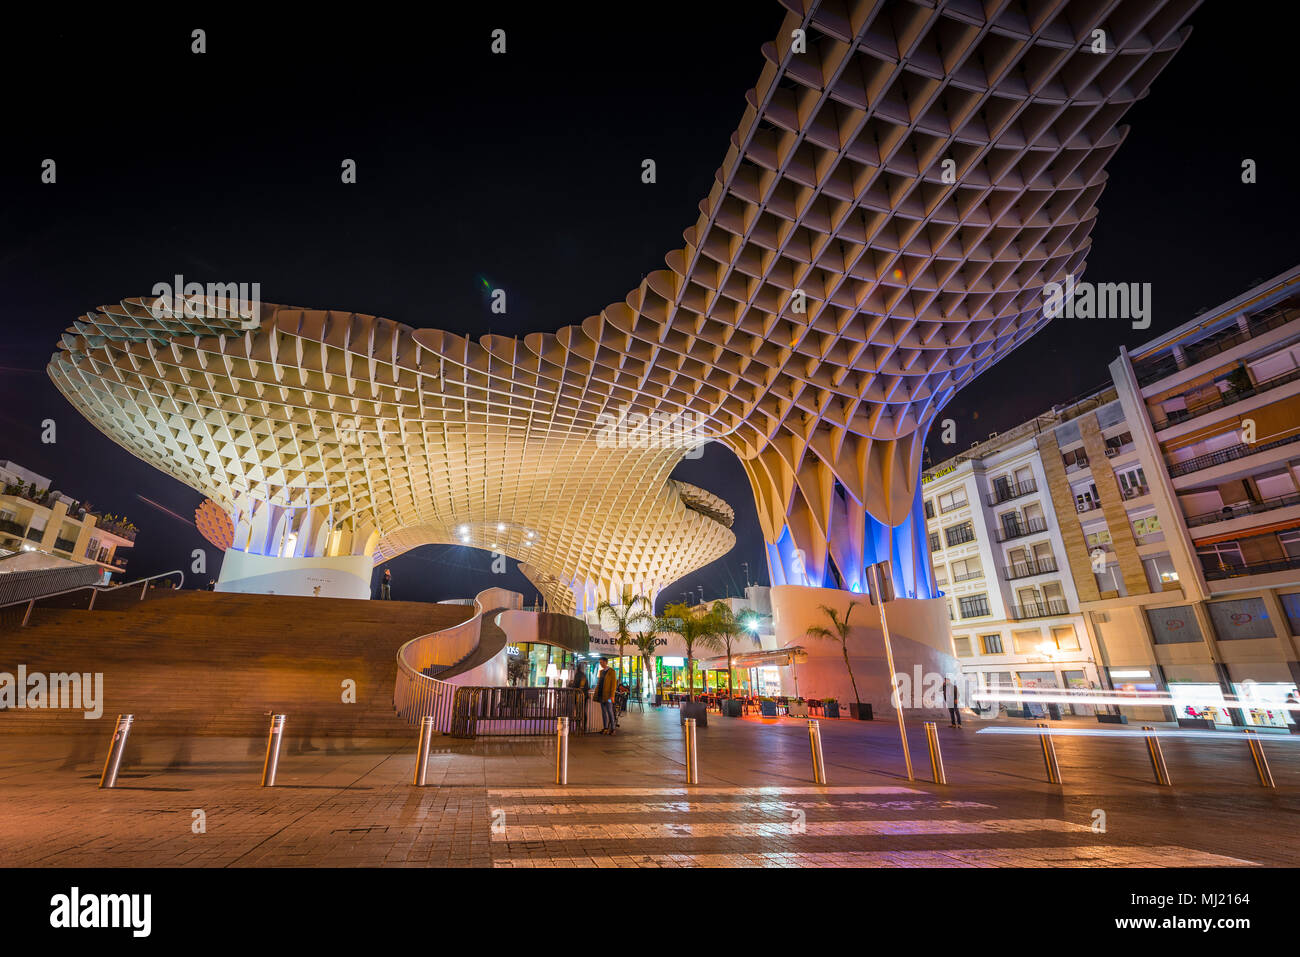 Architettura moderna struttura in legno Metropol Parasol, illuminato, con tracce di luce di notte, Plaza de la Encarnación Foto Stock